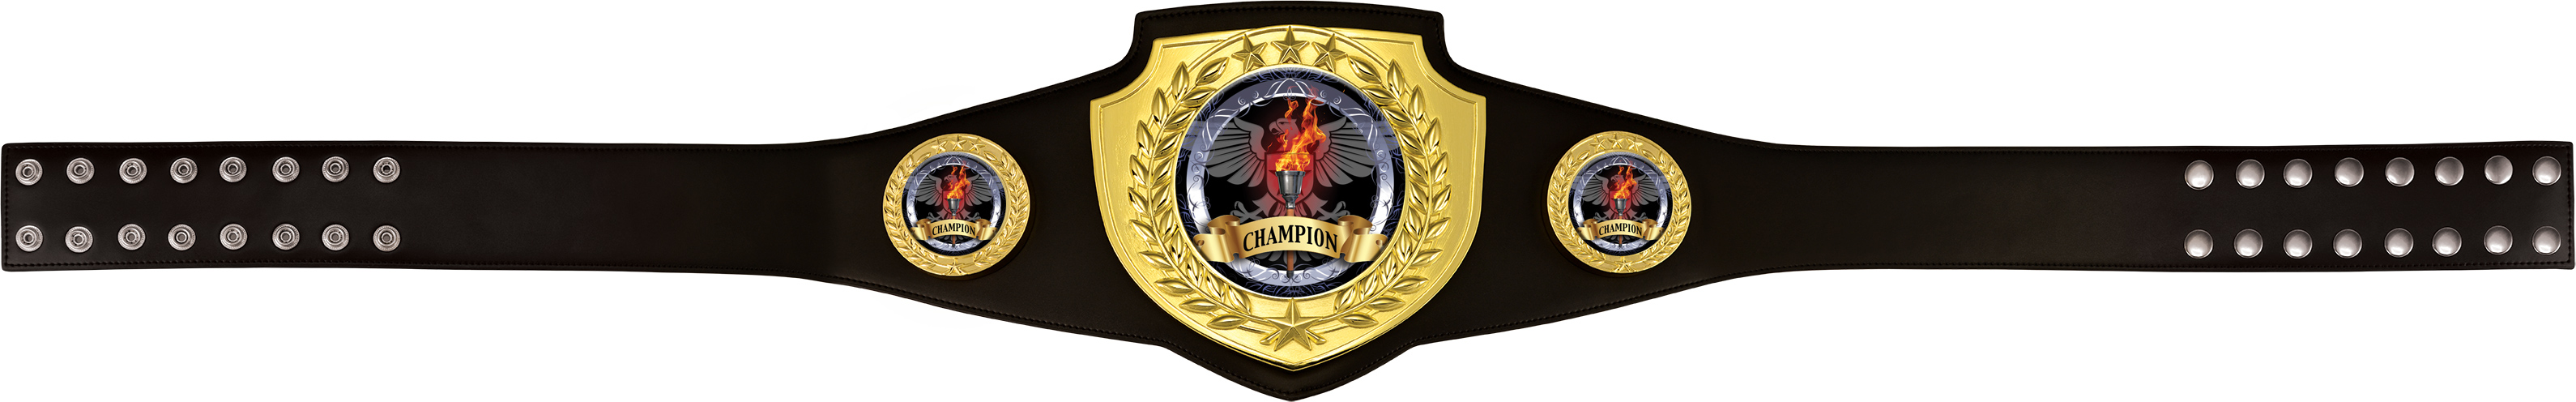 Champion Champion Shield Award Belt